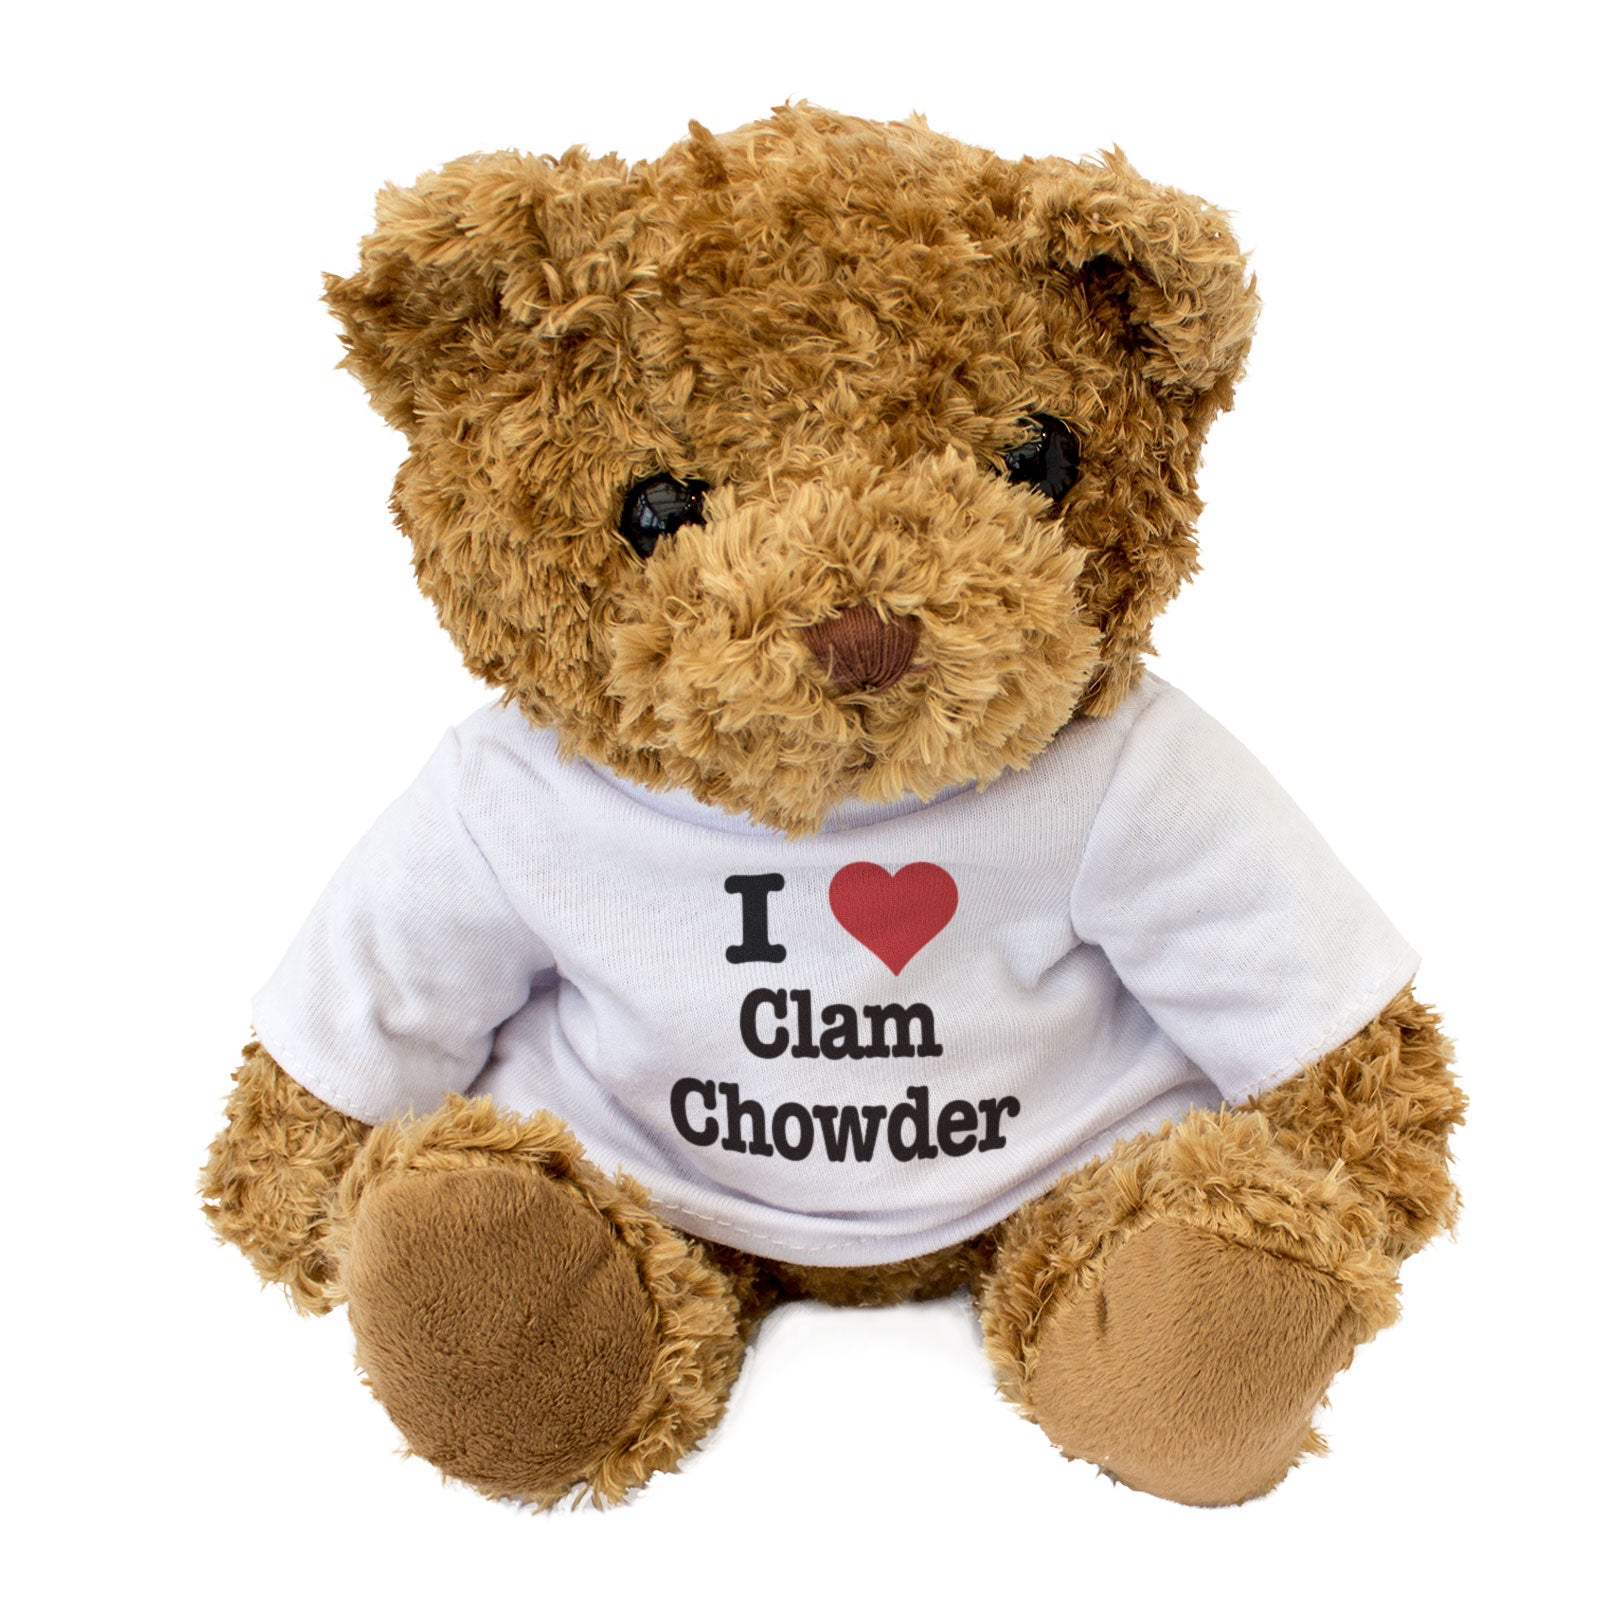 I Love Clam Chowder - Teddy Bear